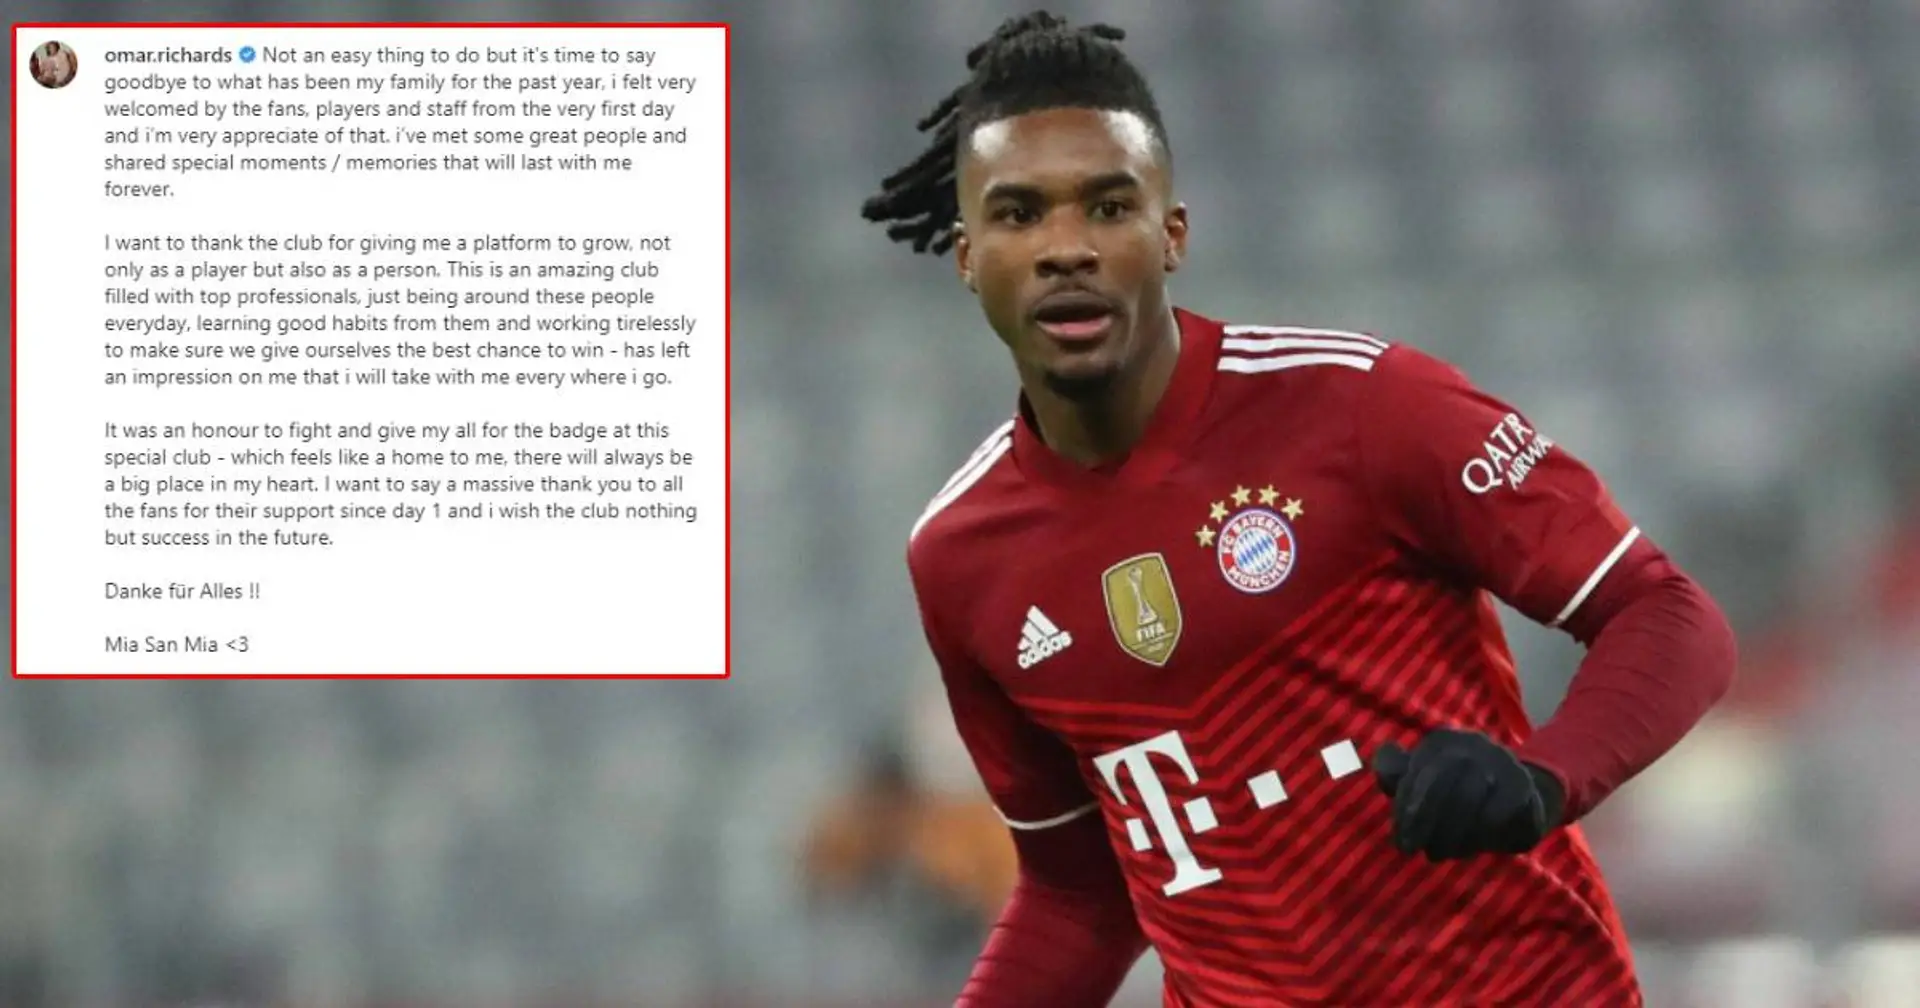 "Club, der sich für mich wie ein Zuhause anfühlt": Omar Richards' herzliche Abschiedsworte an Bayern